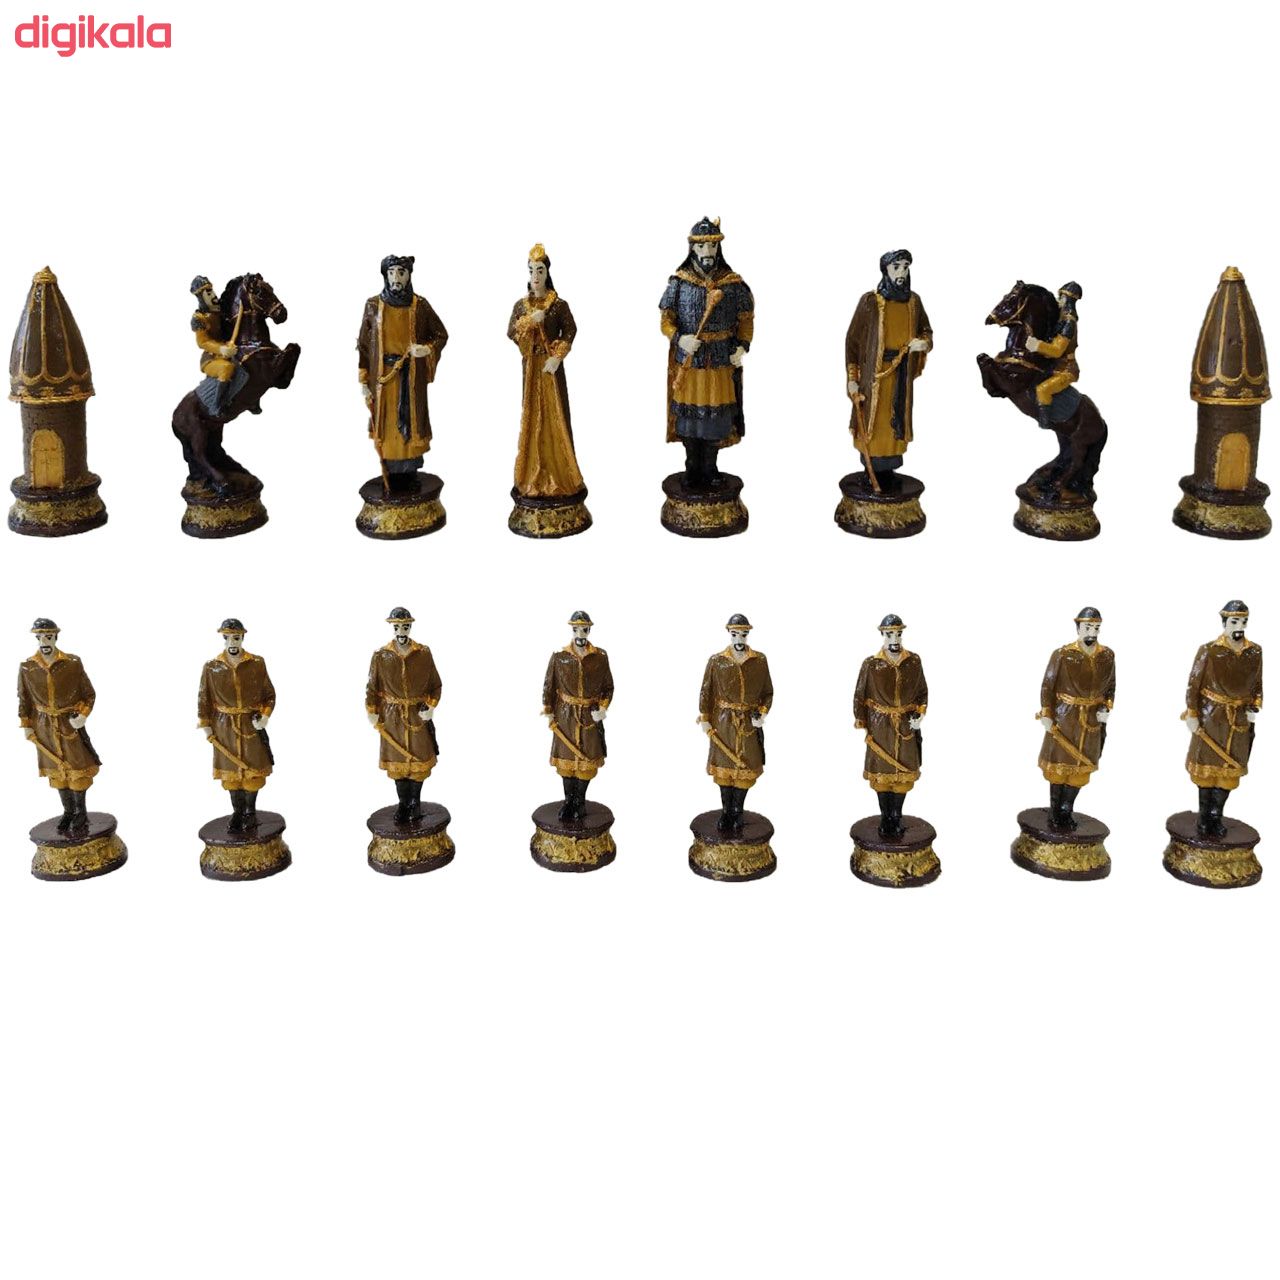  خرید اینترنتی با تخفیف ویژه  مهره شطرنج مدل avsta مجموعه 32عددی